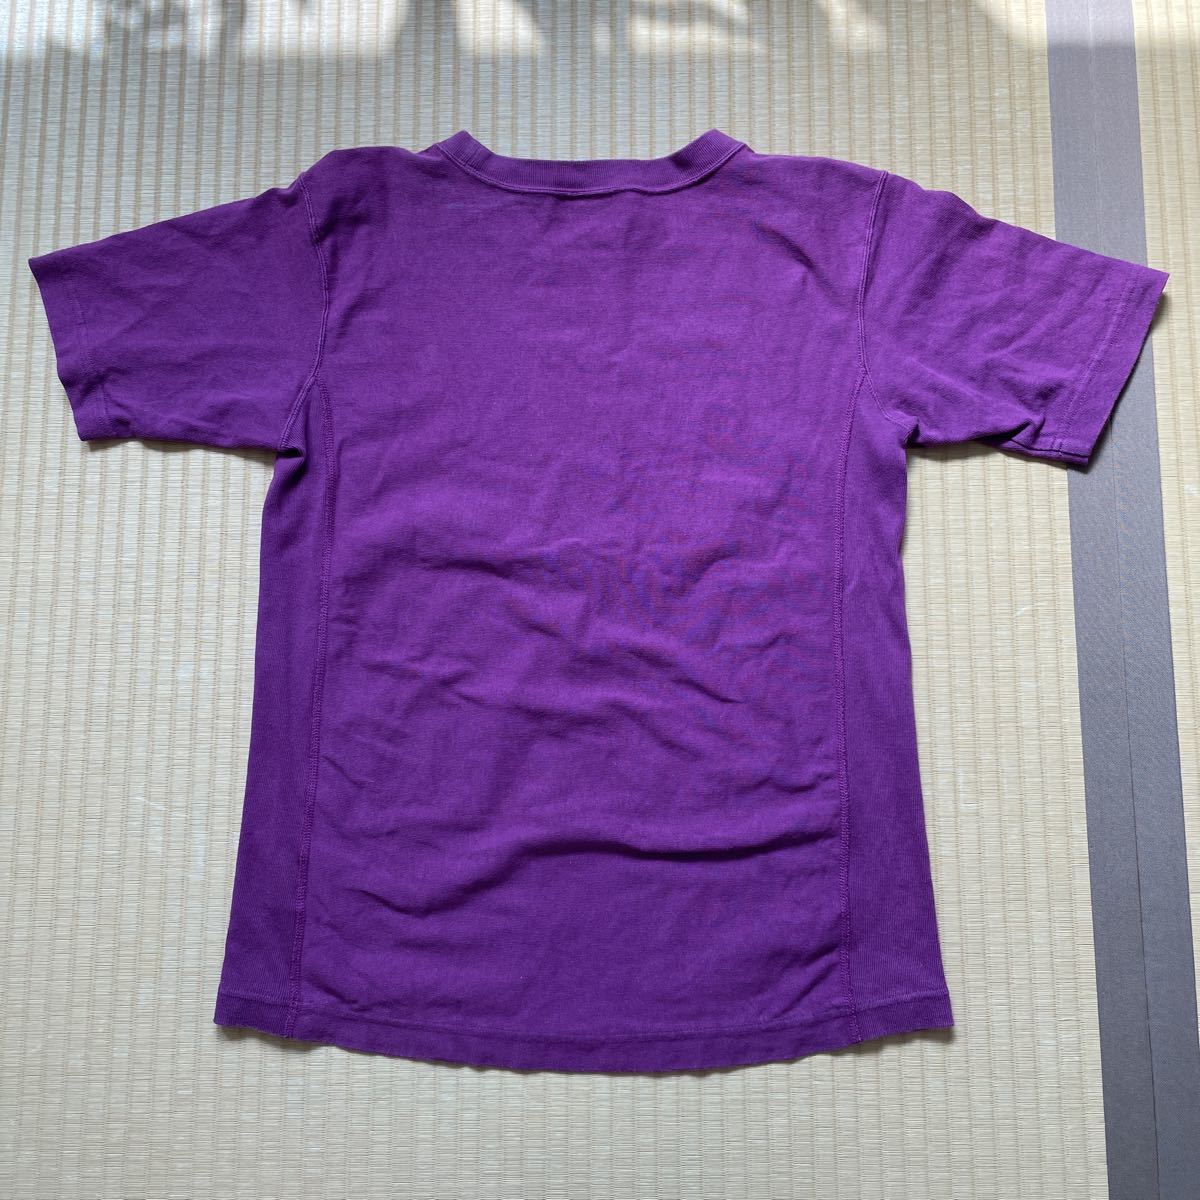 チャンピオン リバースウィーブ Tシャツ Champion 半袖Tシャツ REVERSE WEAVE 90s tシャツ 刺繍タグ リバースウイーブTシャツの画像6